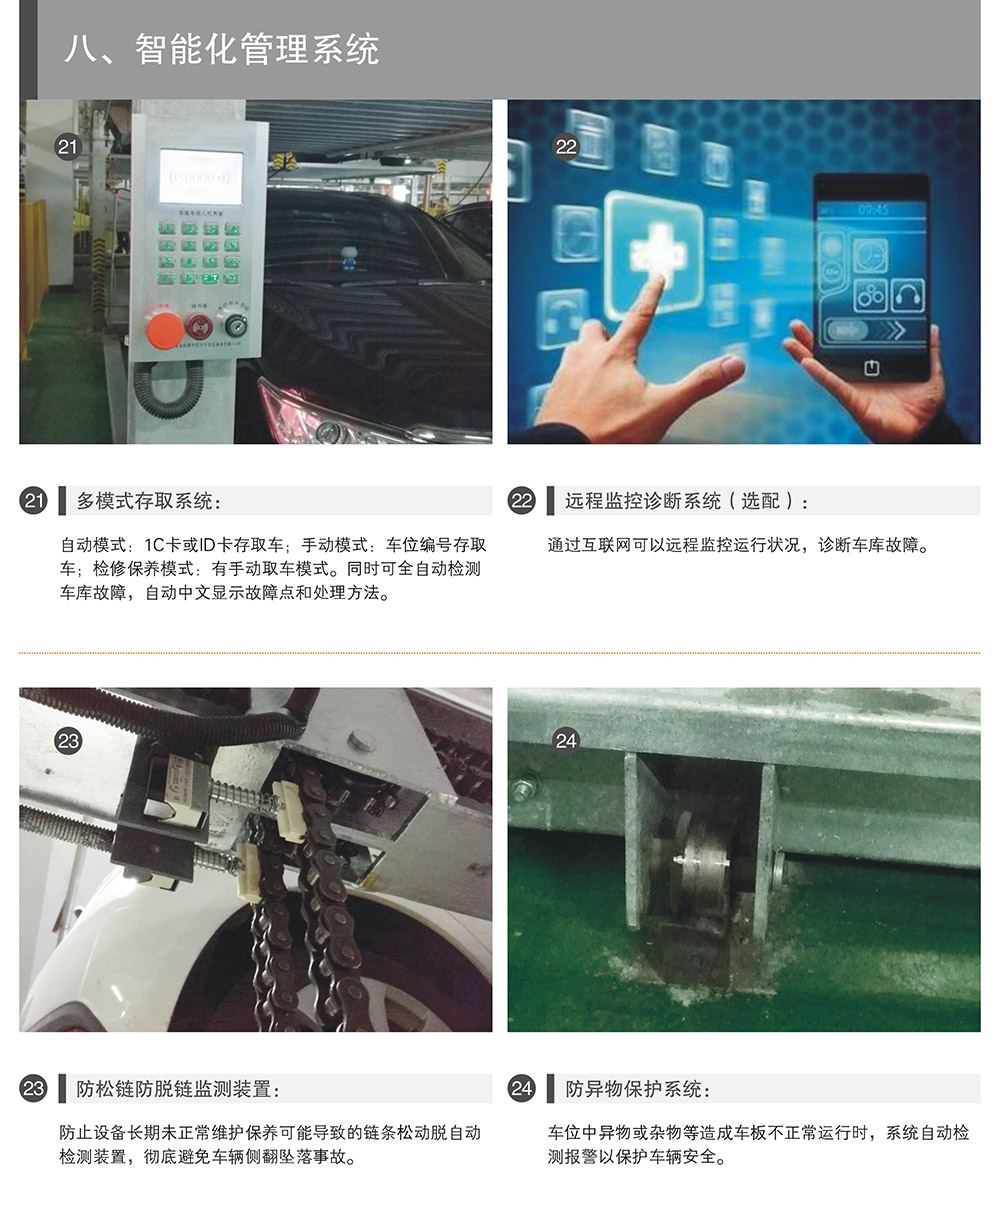 重庆PSH升降横移停车设备智能化管理系统.jpg